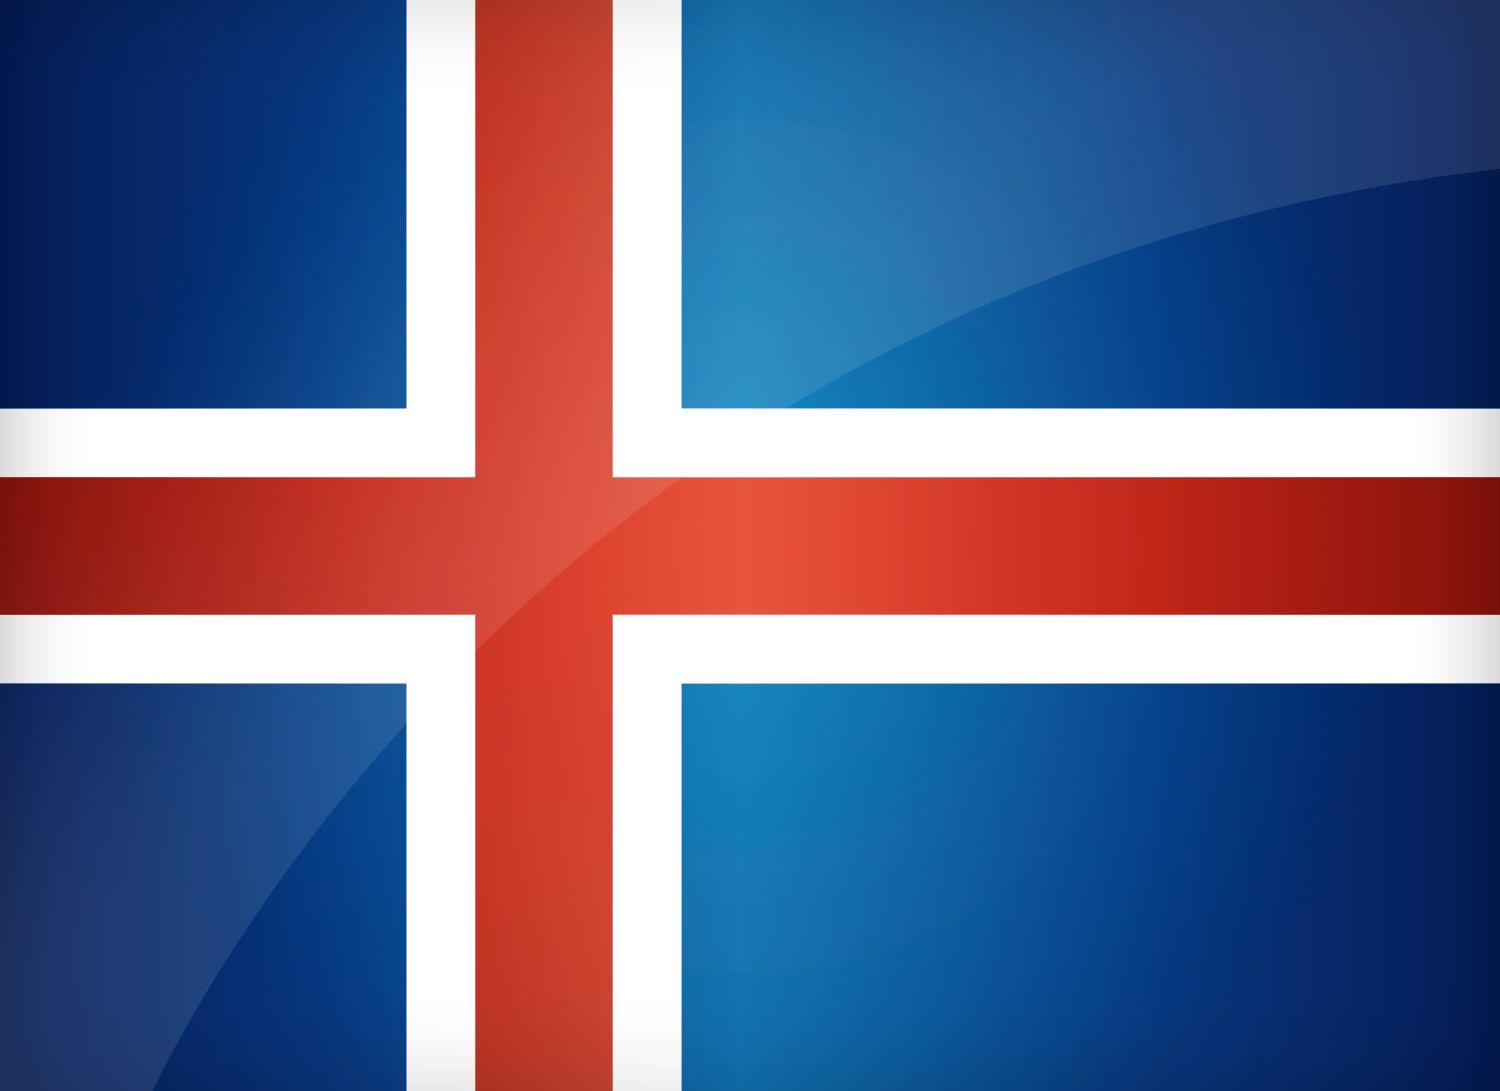 Iceland national football team #Iceland #IcelandFootballTeam